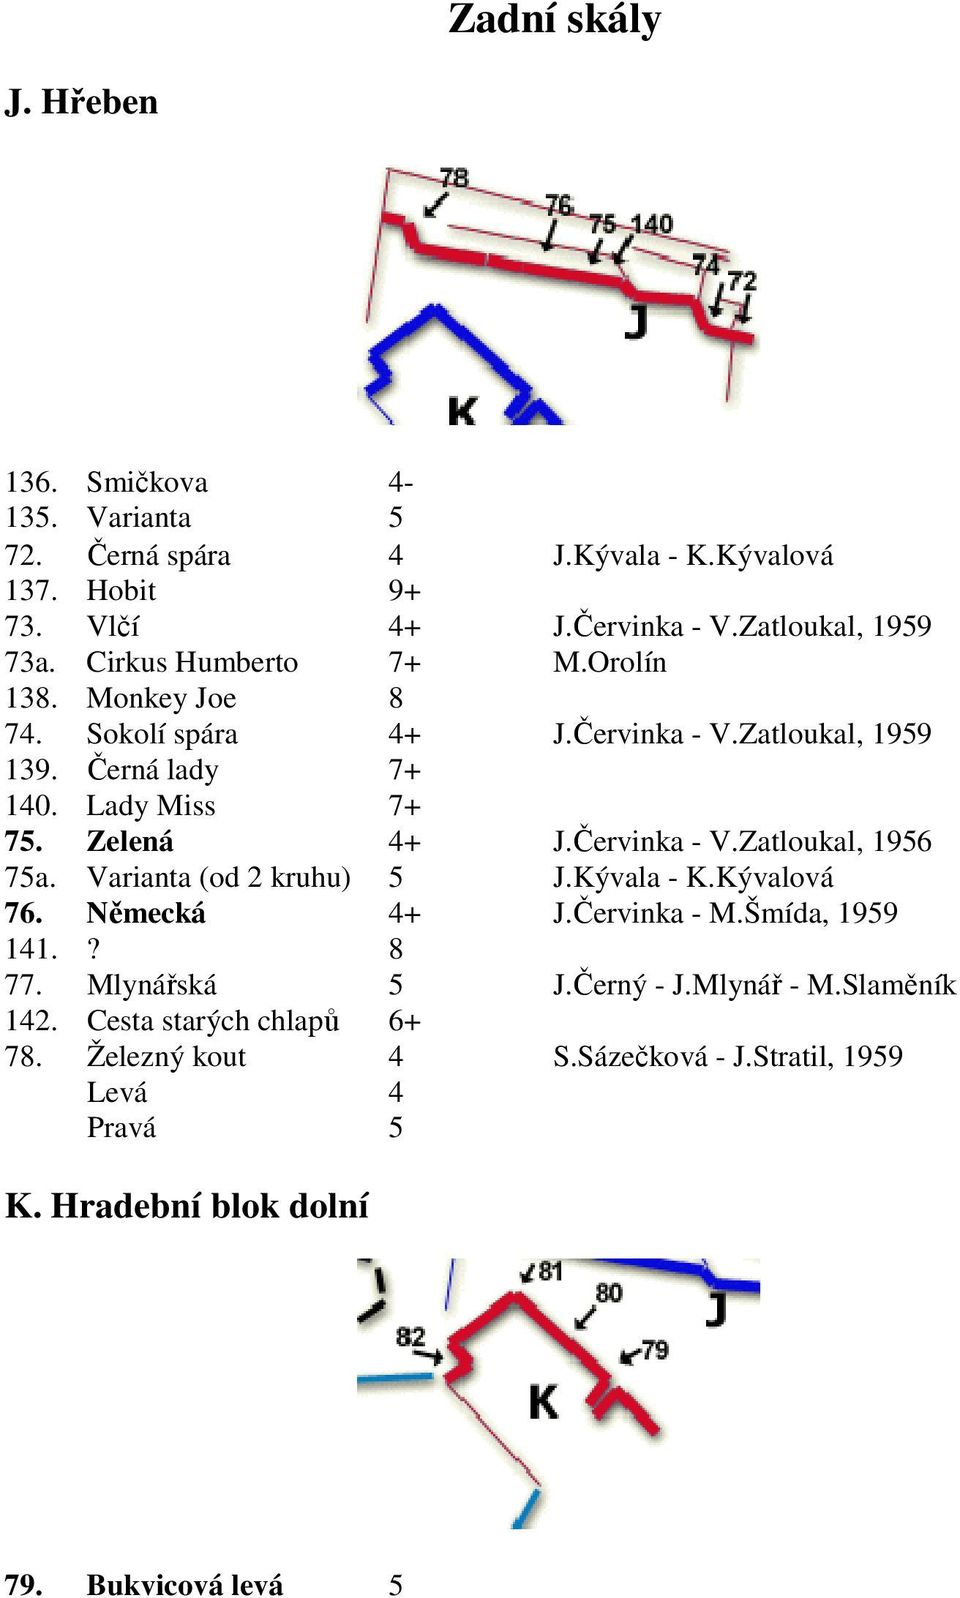 Červinka - V.Zatloukal, 1956 75a. Varianta (od 2 kruhu) 5 J.Kývala - K.Kývalová 76. Německá 4+ J.Červinka - M.Šmída, 1959 141.? 8 77. Mlynářská 5 J.